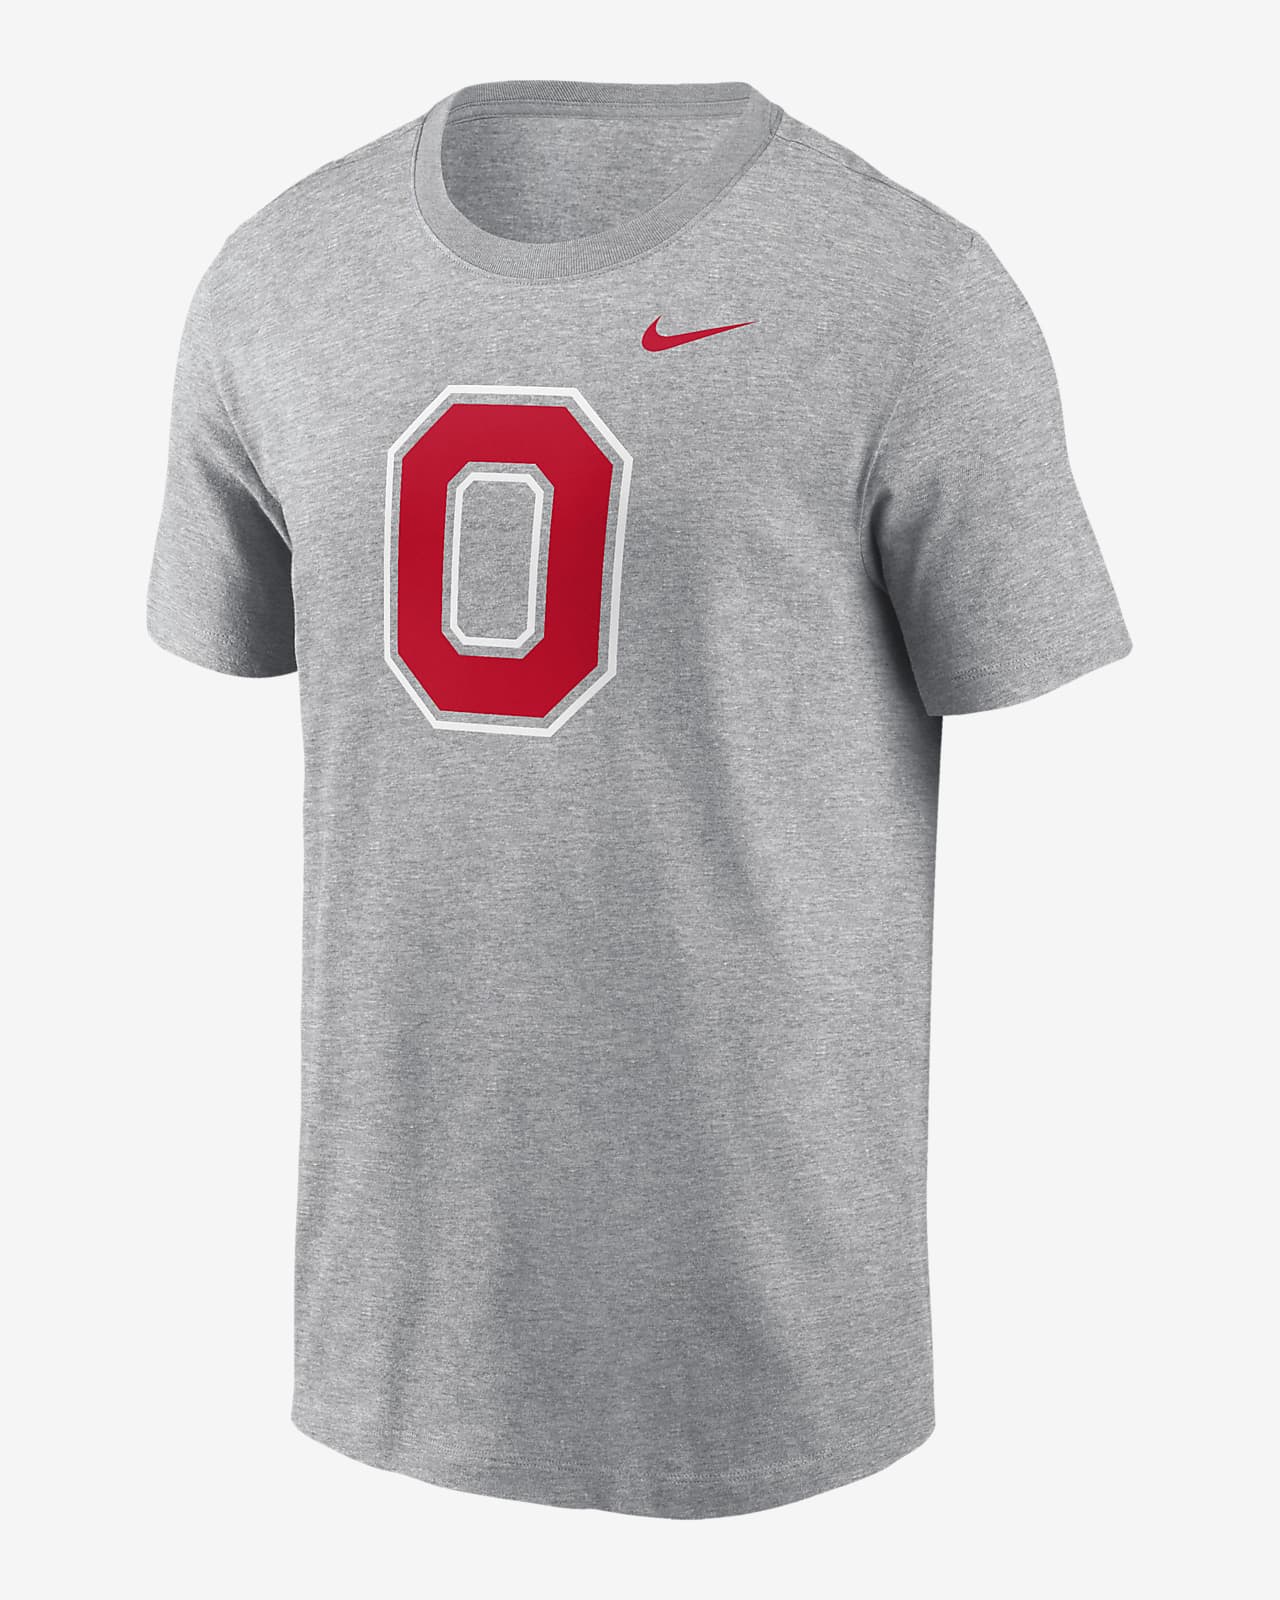 Ohio State Buckeyes Primetime Evergreen Alternate Logo Men's Nike College T-Shirt